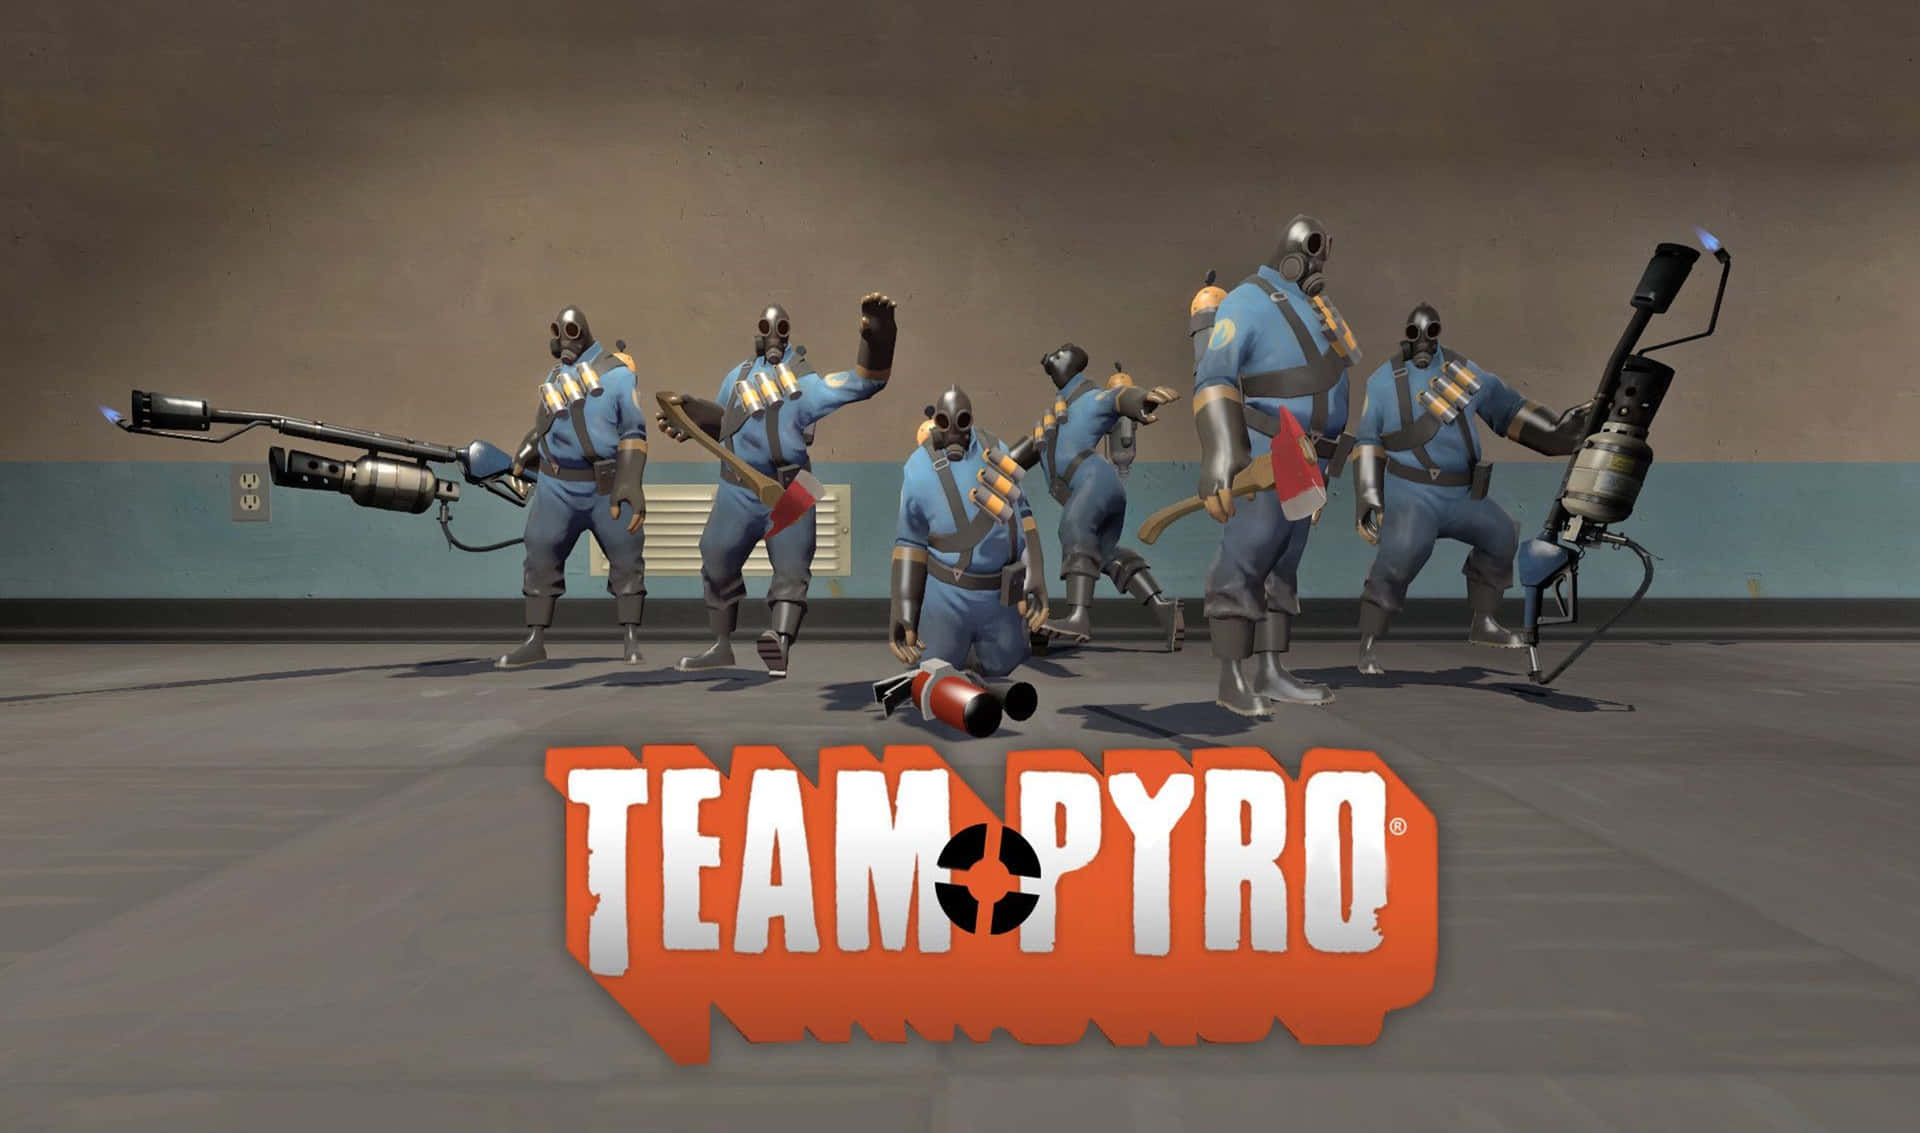 2440x1440voll Pyro Hintergrund Für Team Fortress 2